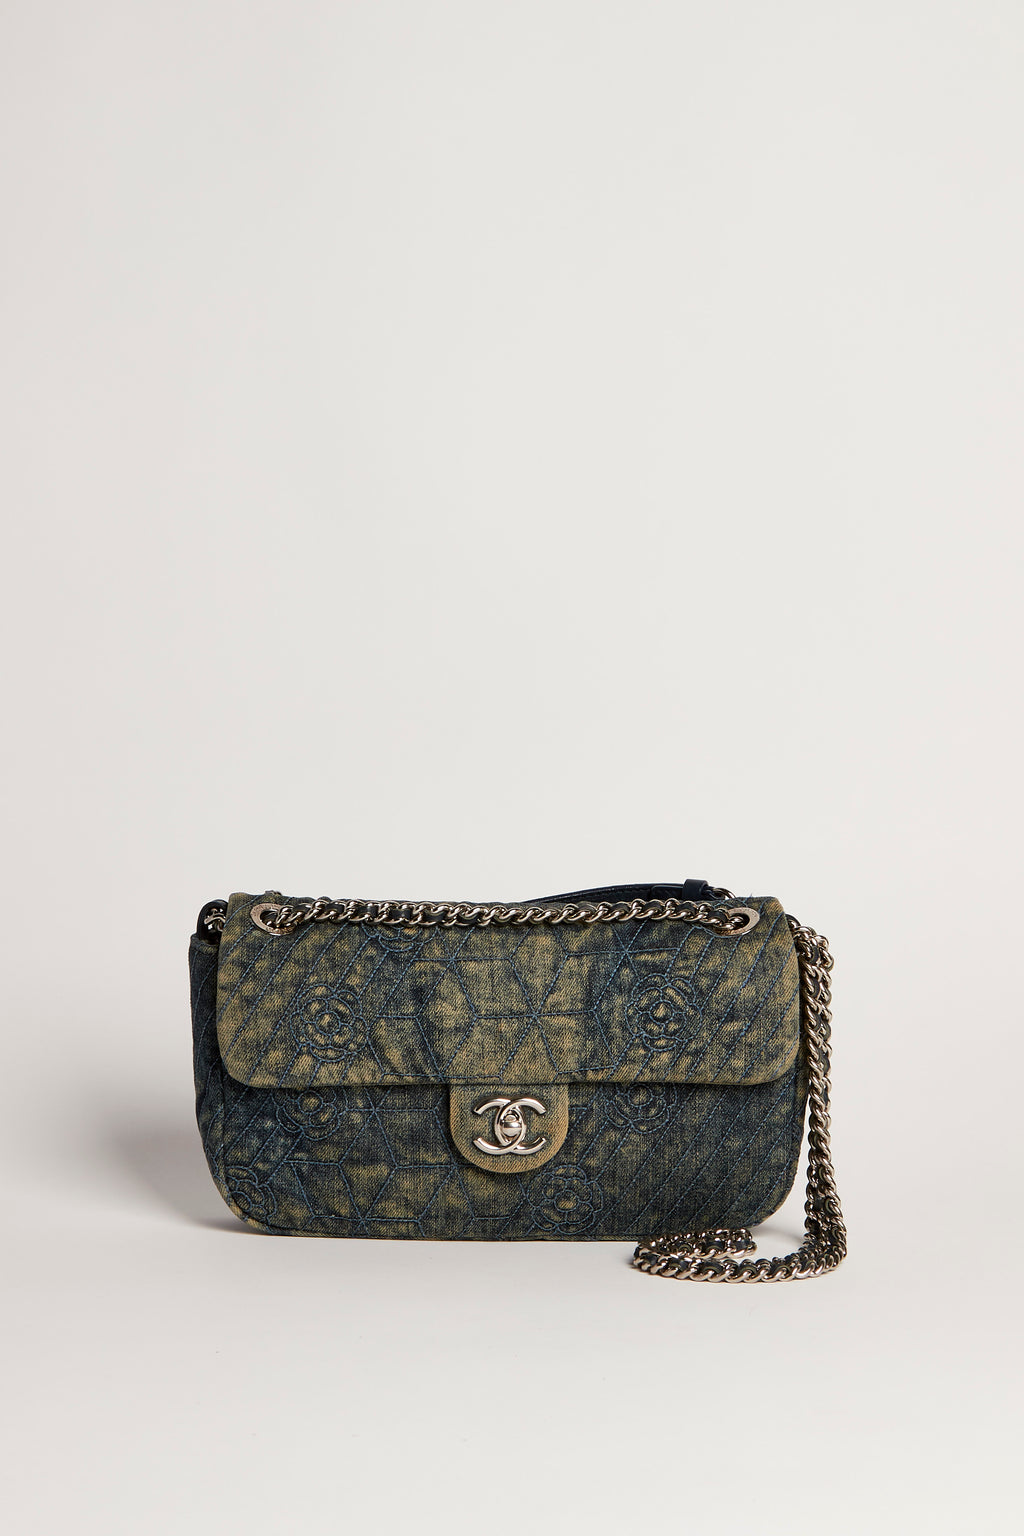 RARE 2010s Chanel Floral Denim Shoulder Bag